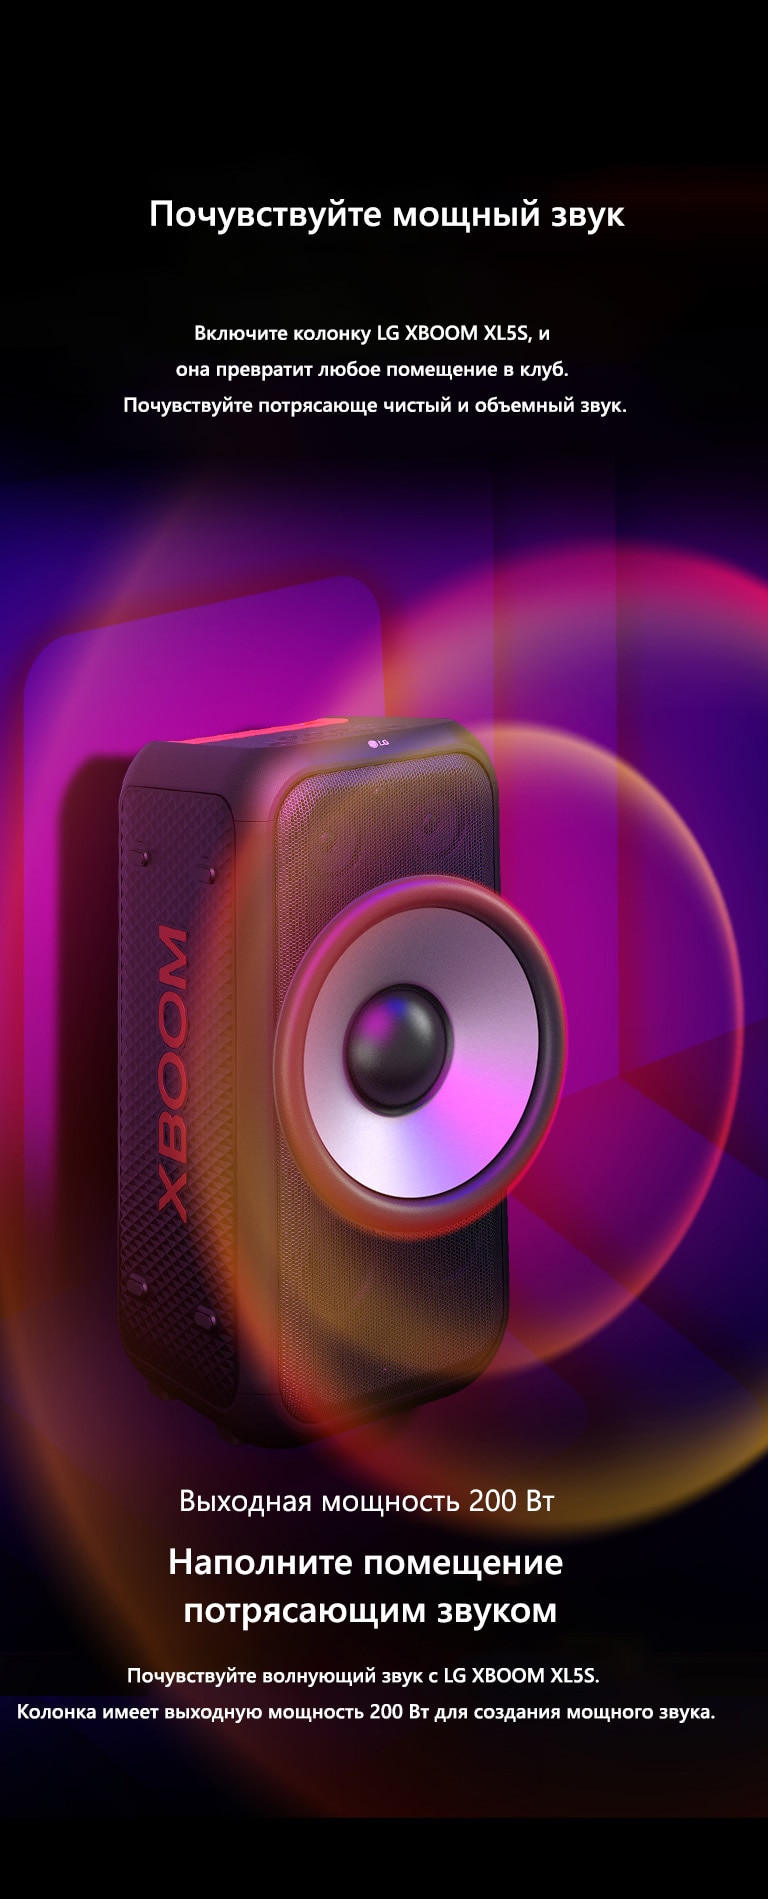 LG XBOOM XL5S в бесконечном пространстве. На стене изображена квадратная звуковая графика. Большой 6.5-дюймовый низкочастотный динамик увеличен, подчеркивая мощность колонки в 200 Вт. От низкочастотного динамика исходят звуковые волны.